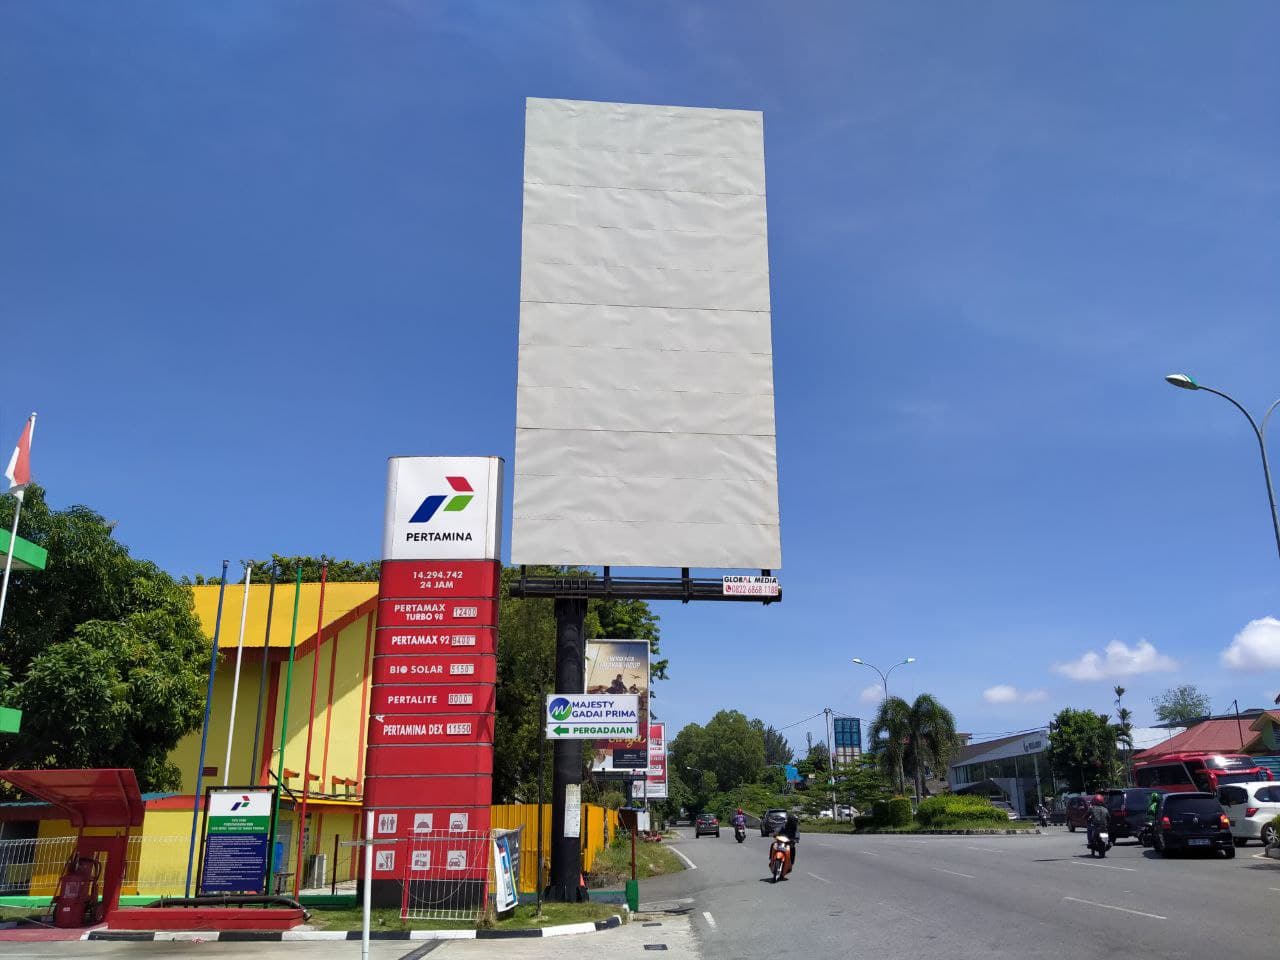 Billboard 